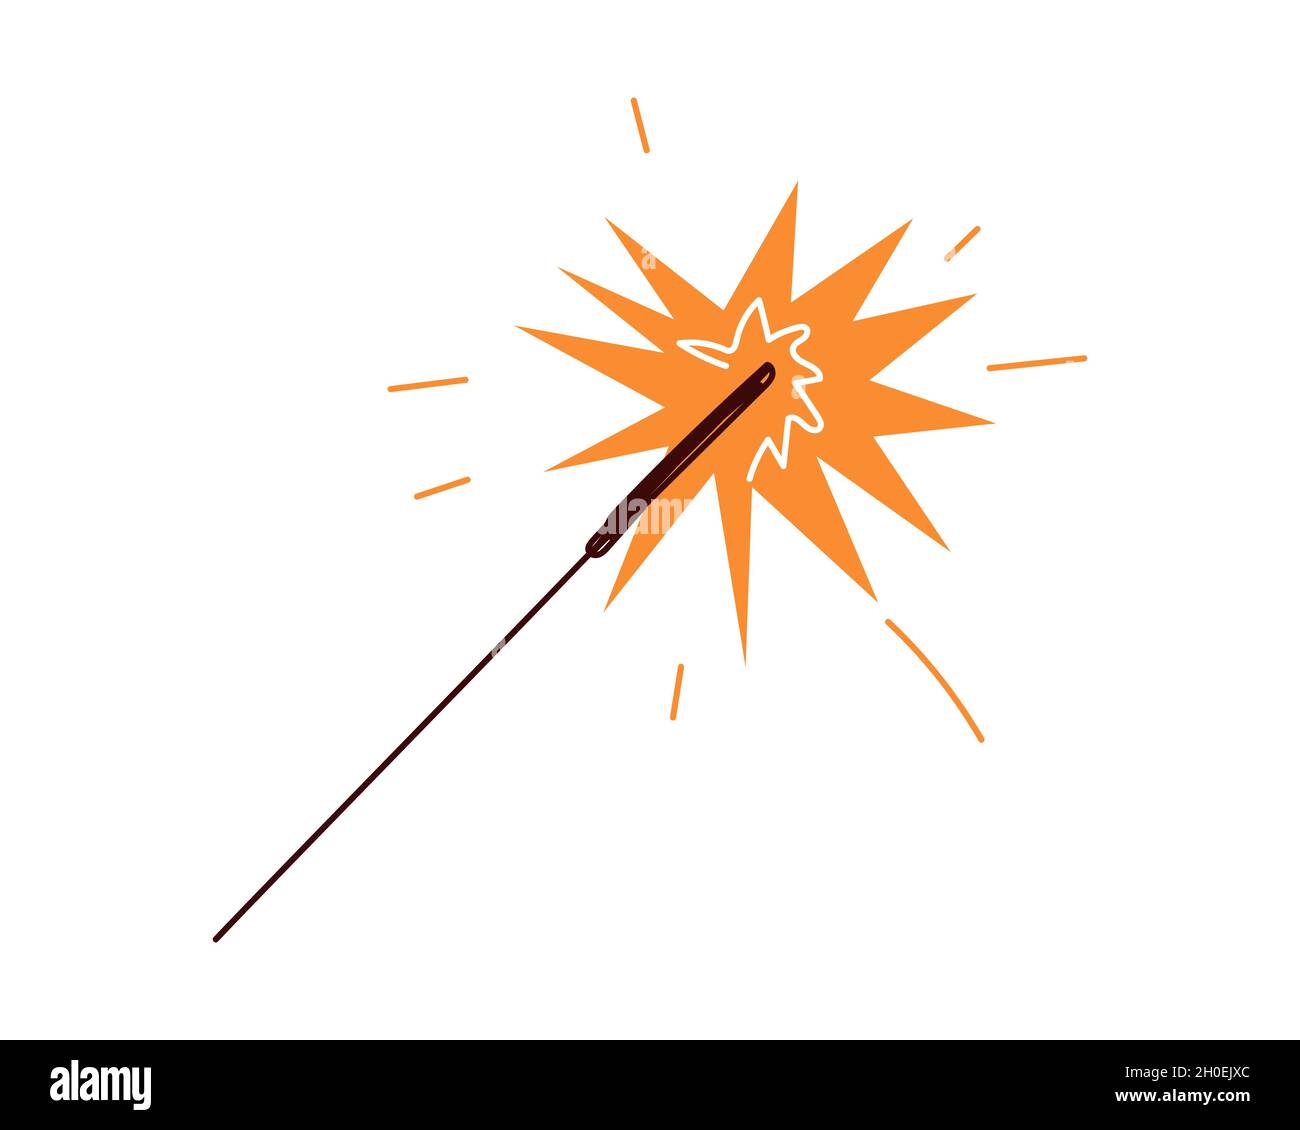 Sparkler che brucia il doodle colorato. Illustrazione eps isolata del vettore di disegno fiamma Fireworwork Illustrazione Vettoriale